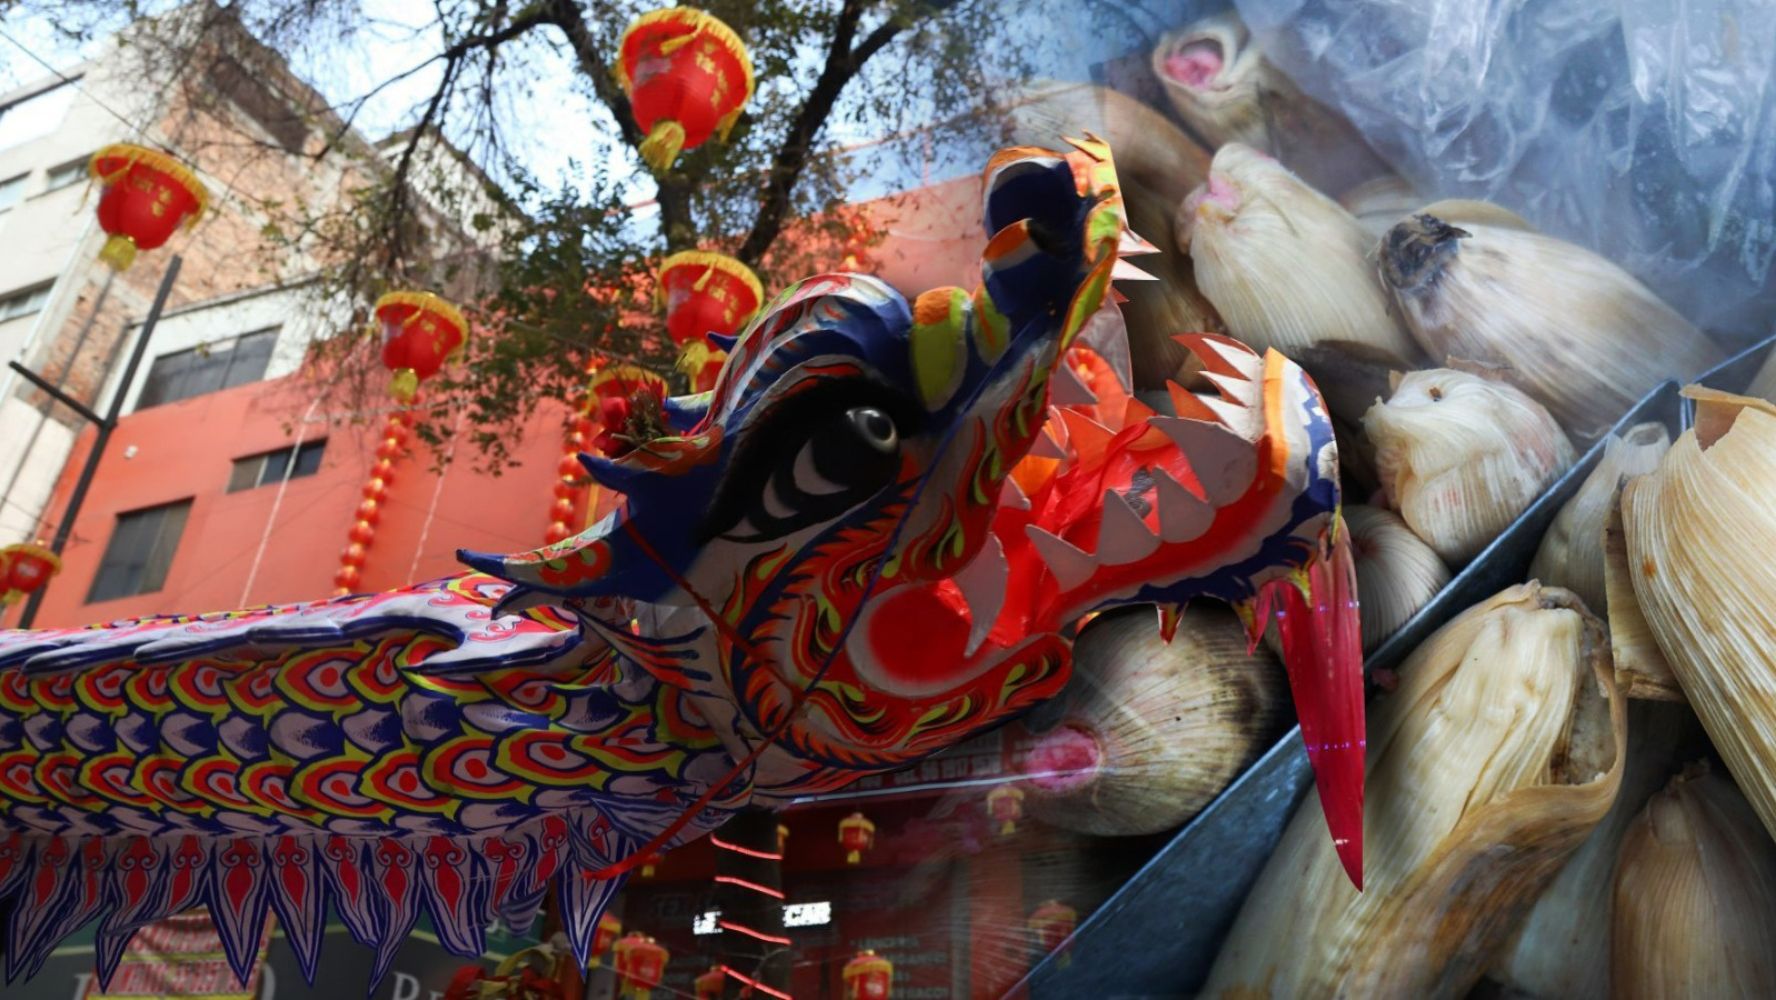 Actividades gratis en CDMX del 2 al 4 de febrero: Ferias de tamales, festejos del Año Nuevo Chino y más